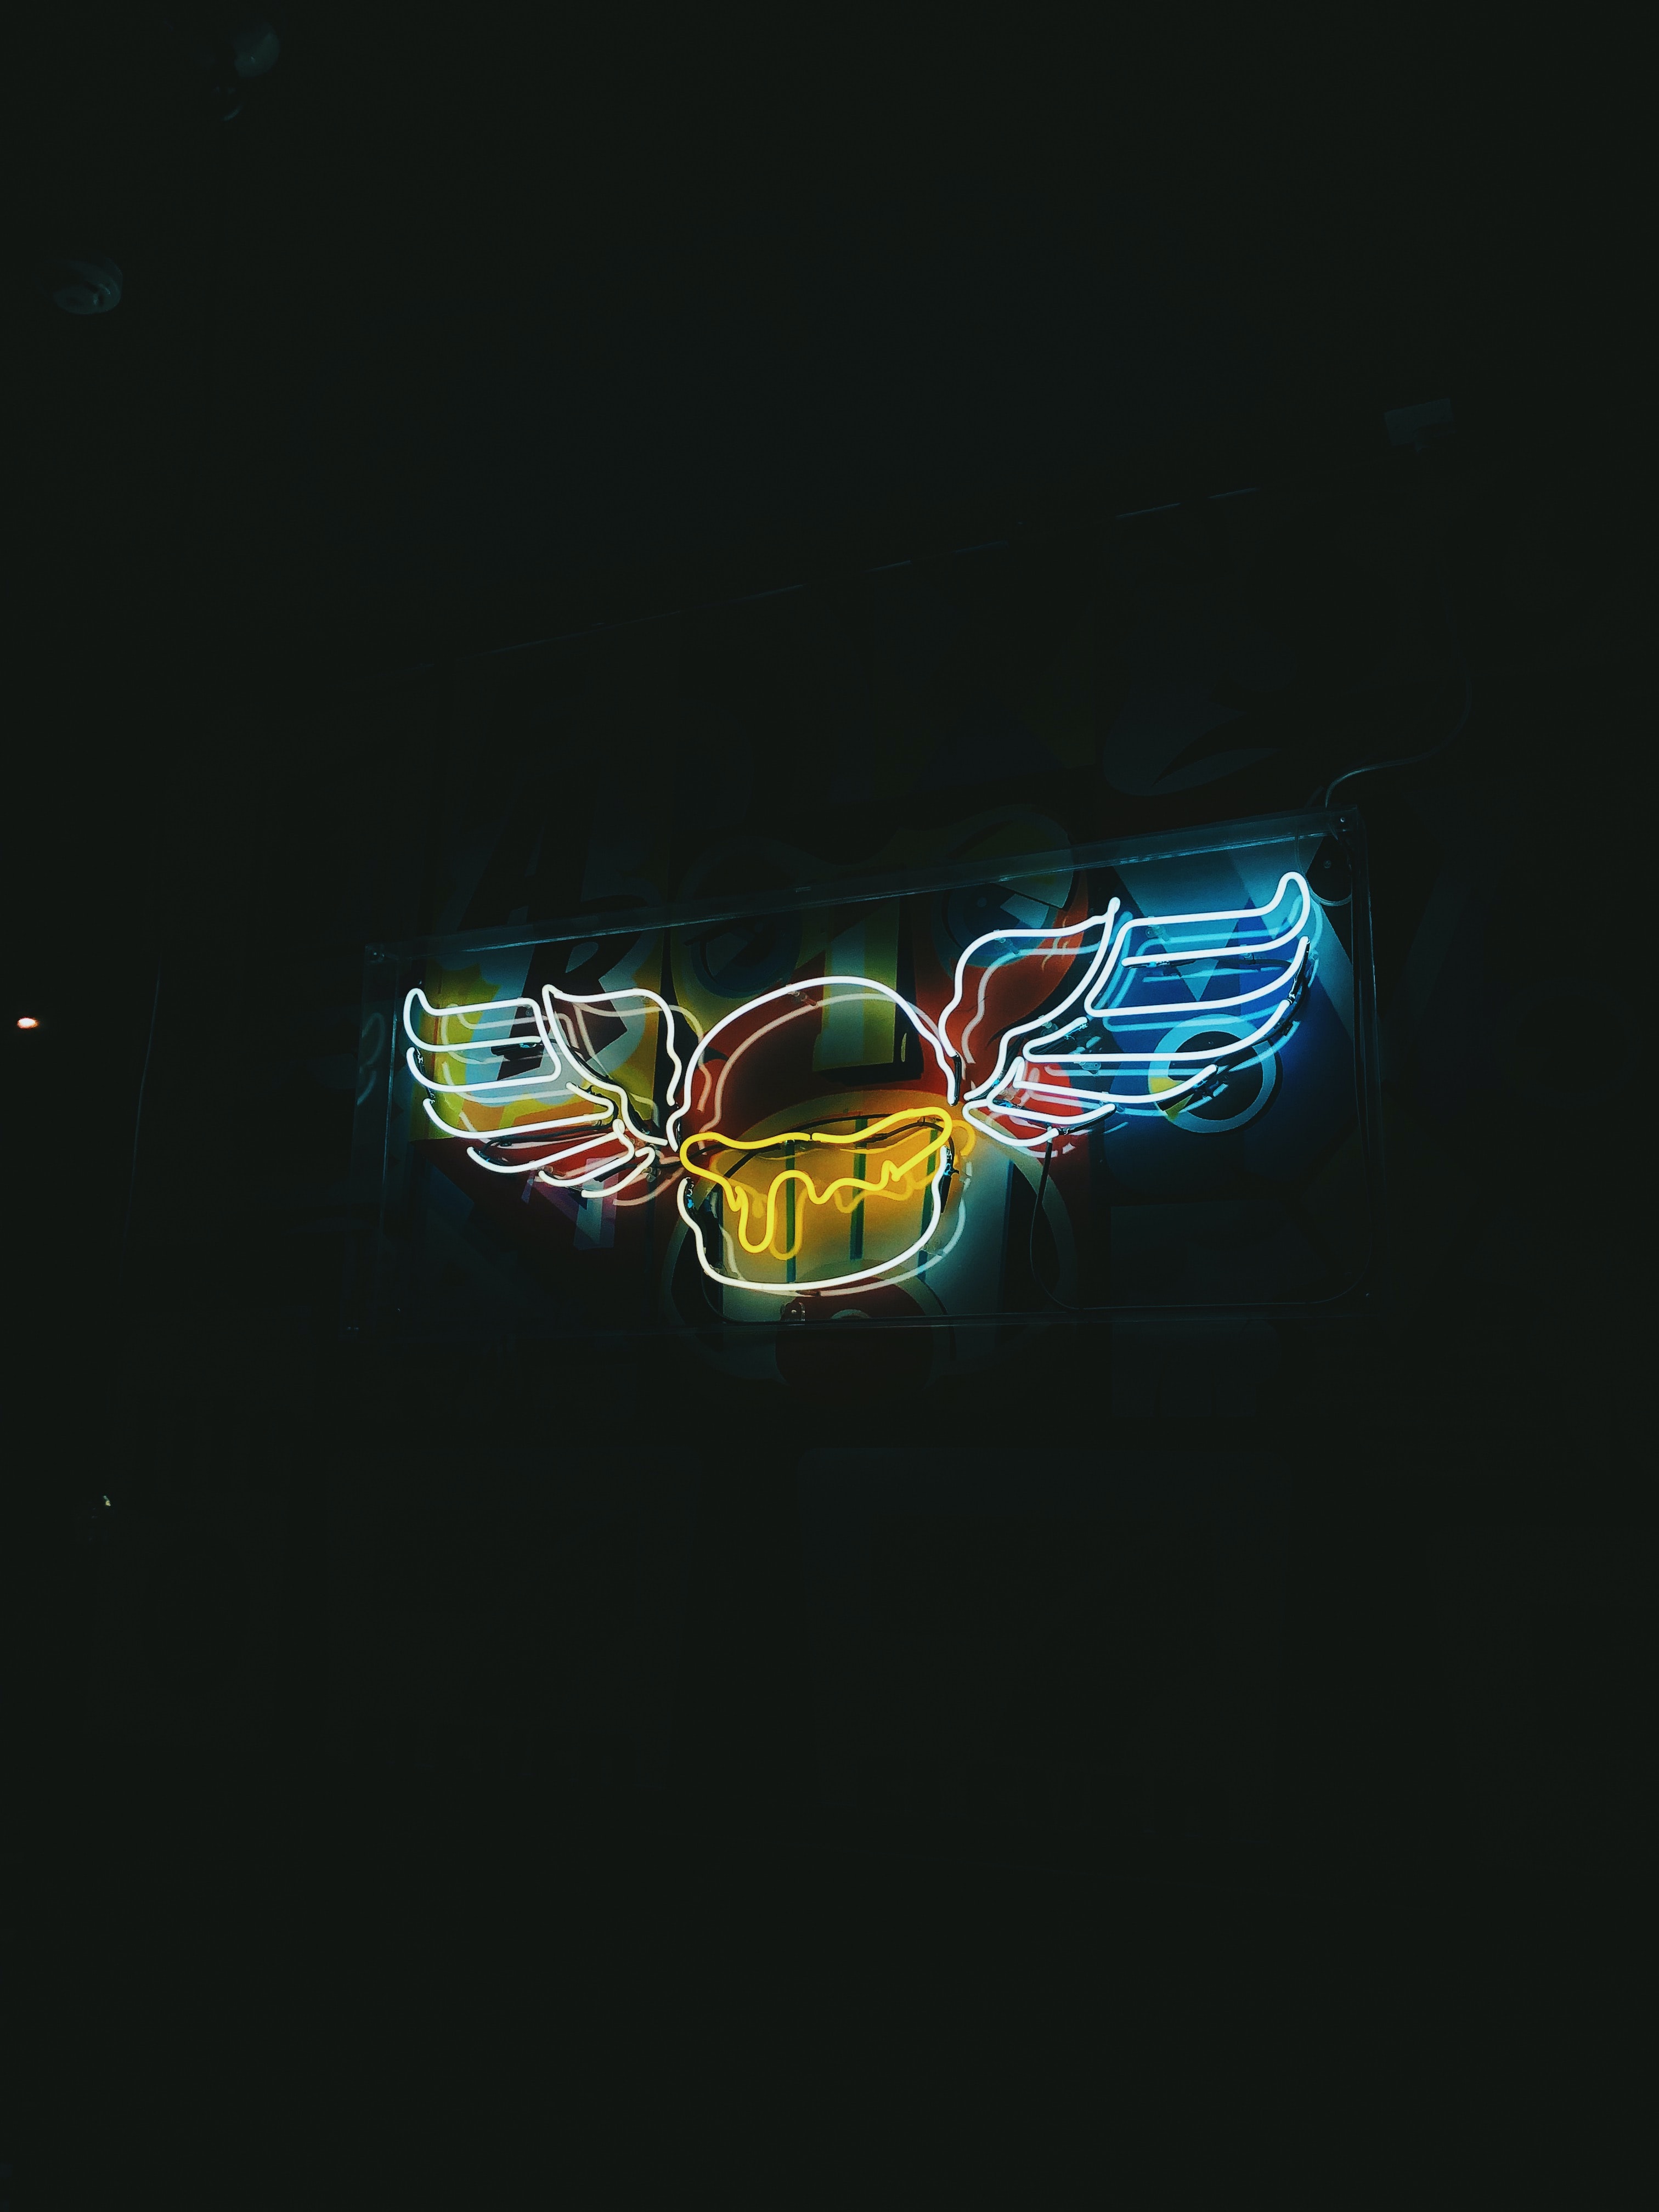 signboard, neon, night, dark, backlight, illumination, wings, sign